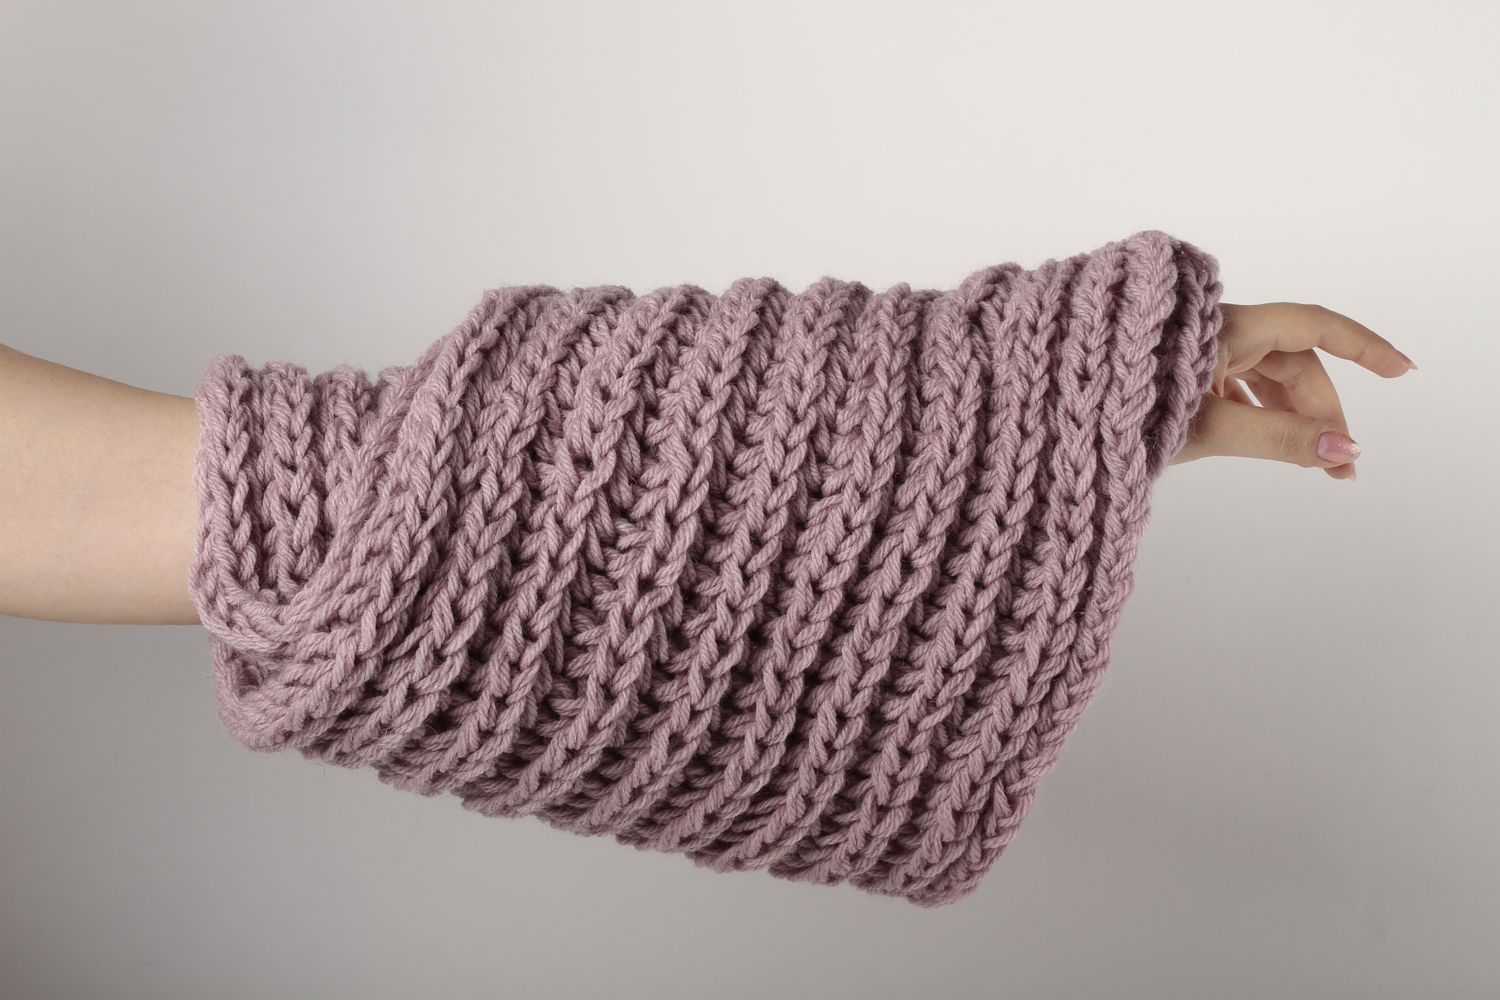 Écharpe large faite main Vêtement femme tricot laine couleur lilas Idée cadeau photo 1